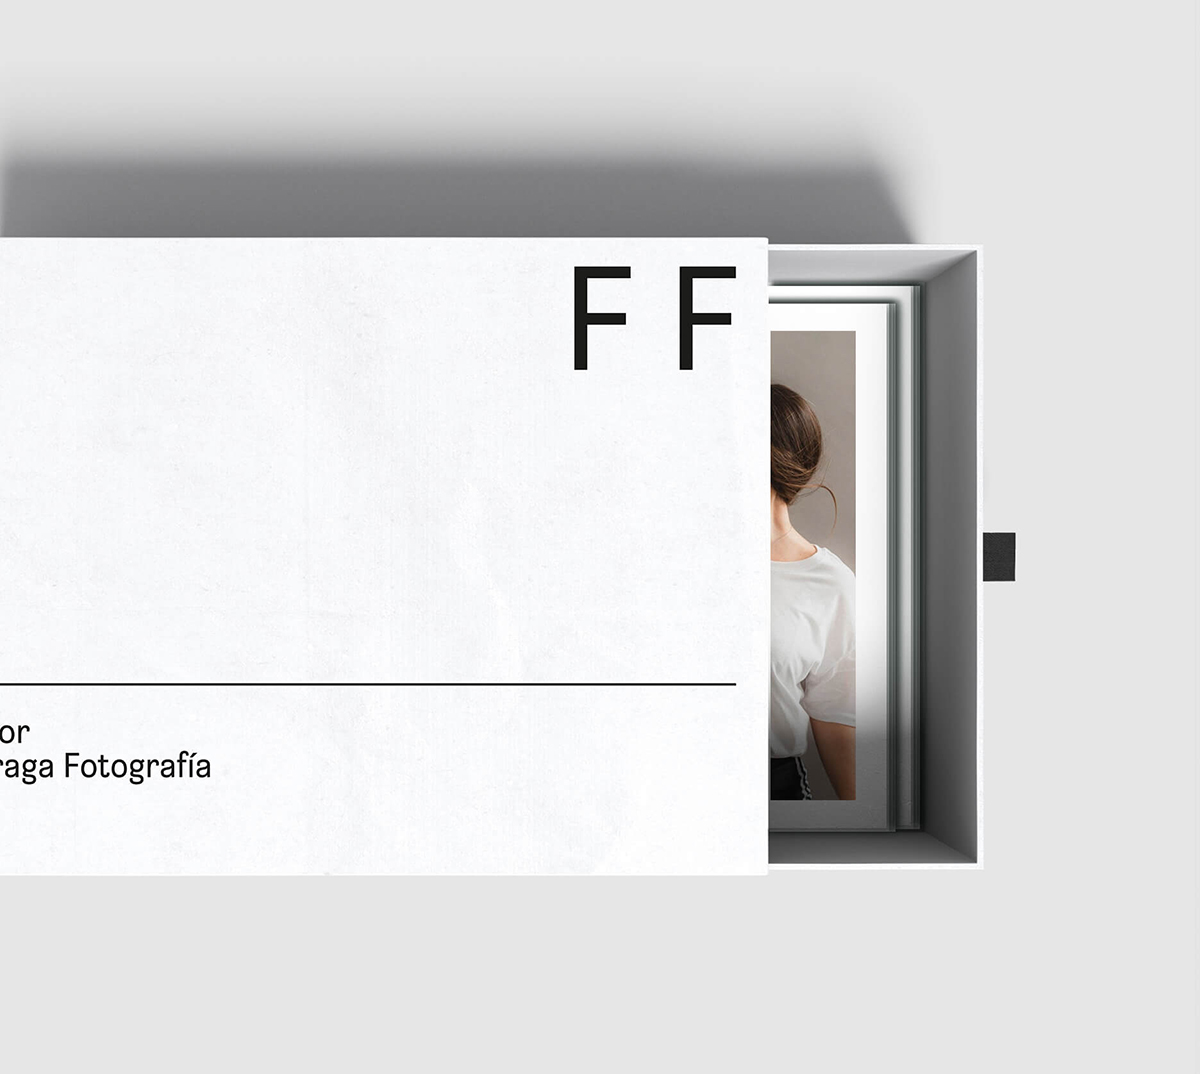 Diseño y desarrollo de identidad visual corporativa para Igor Fraga Fotografía. Detalle packaging.